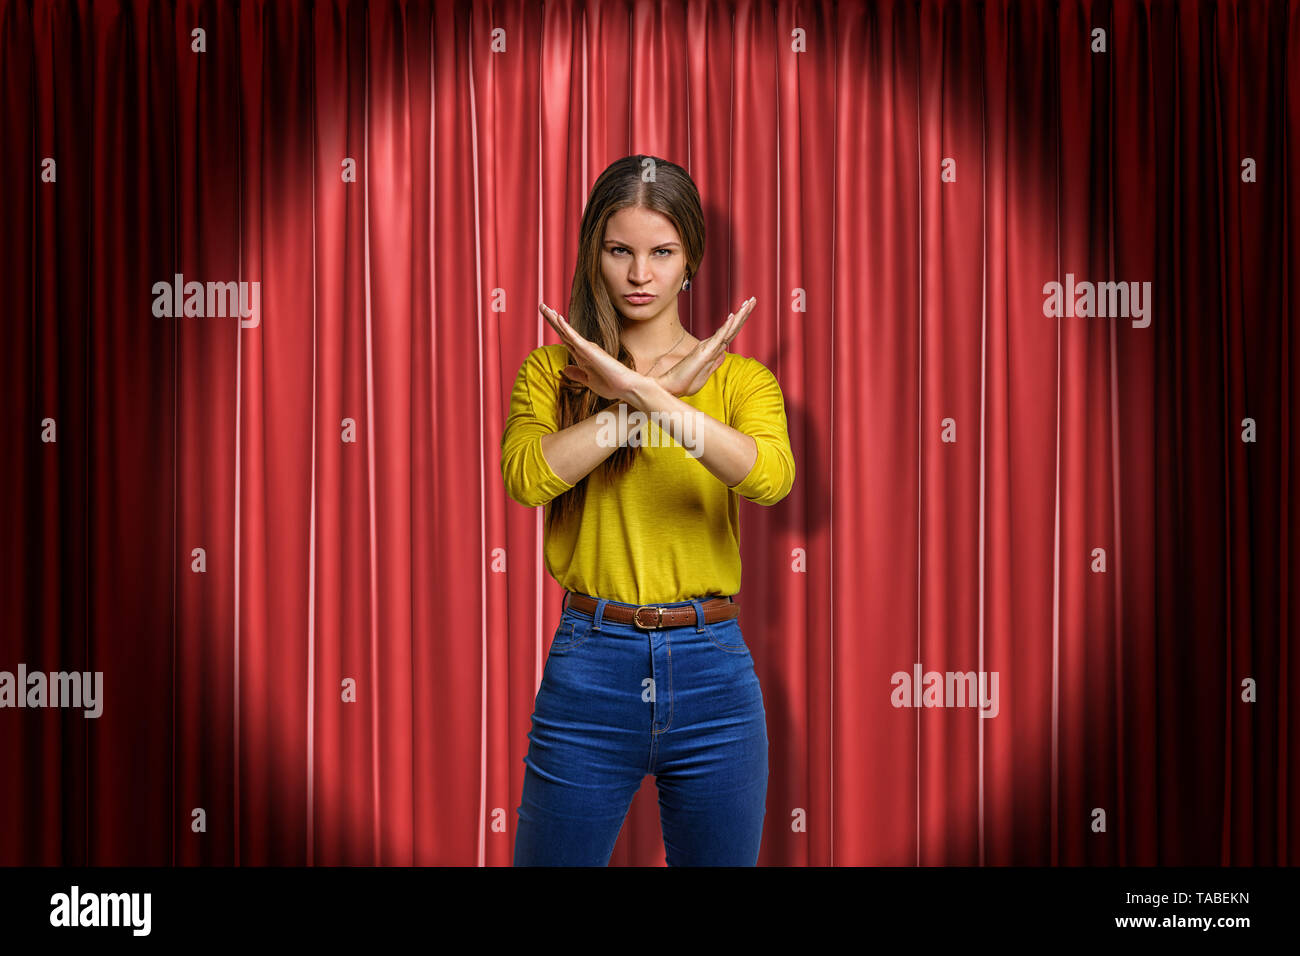 Junge bestimmt Frau in Jeans und gelbes Hemd, Ablehnung Geste auf rote Bühnenvorhänge Hintergrund Stockfoto